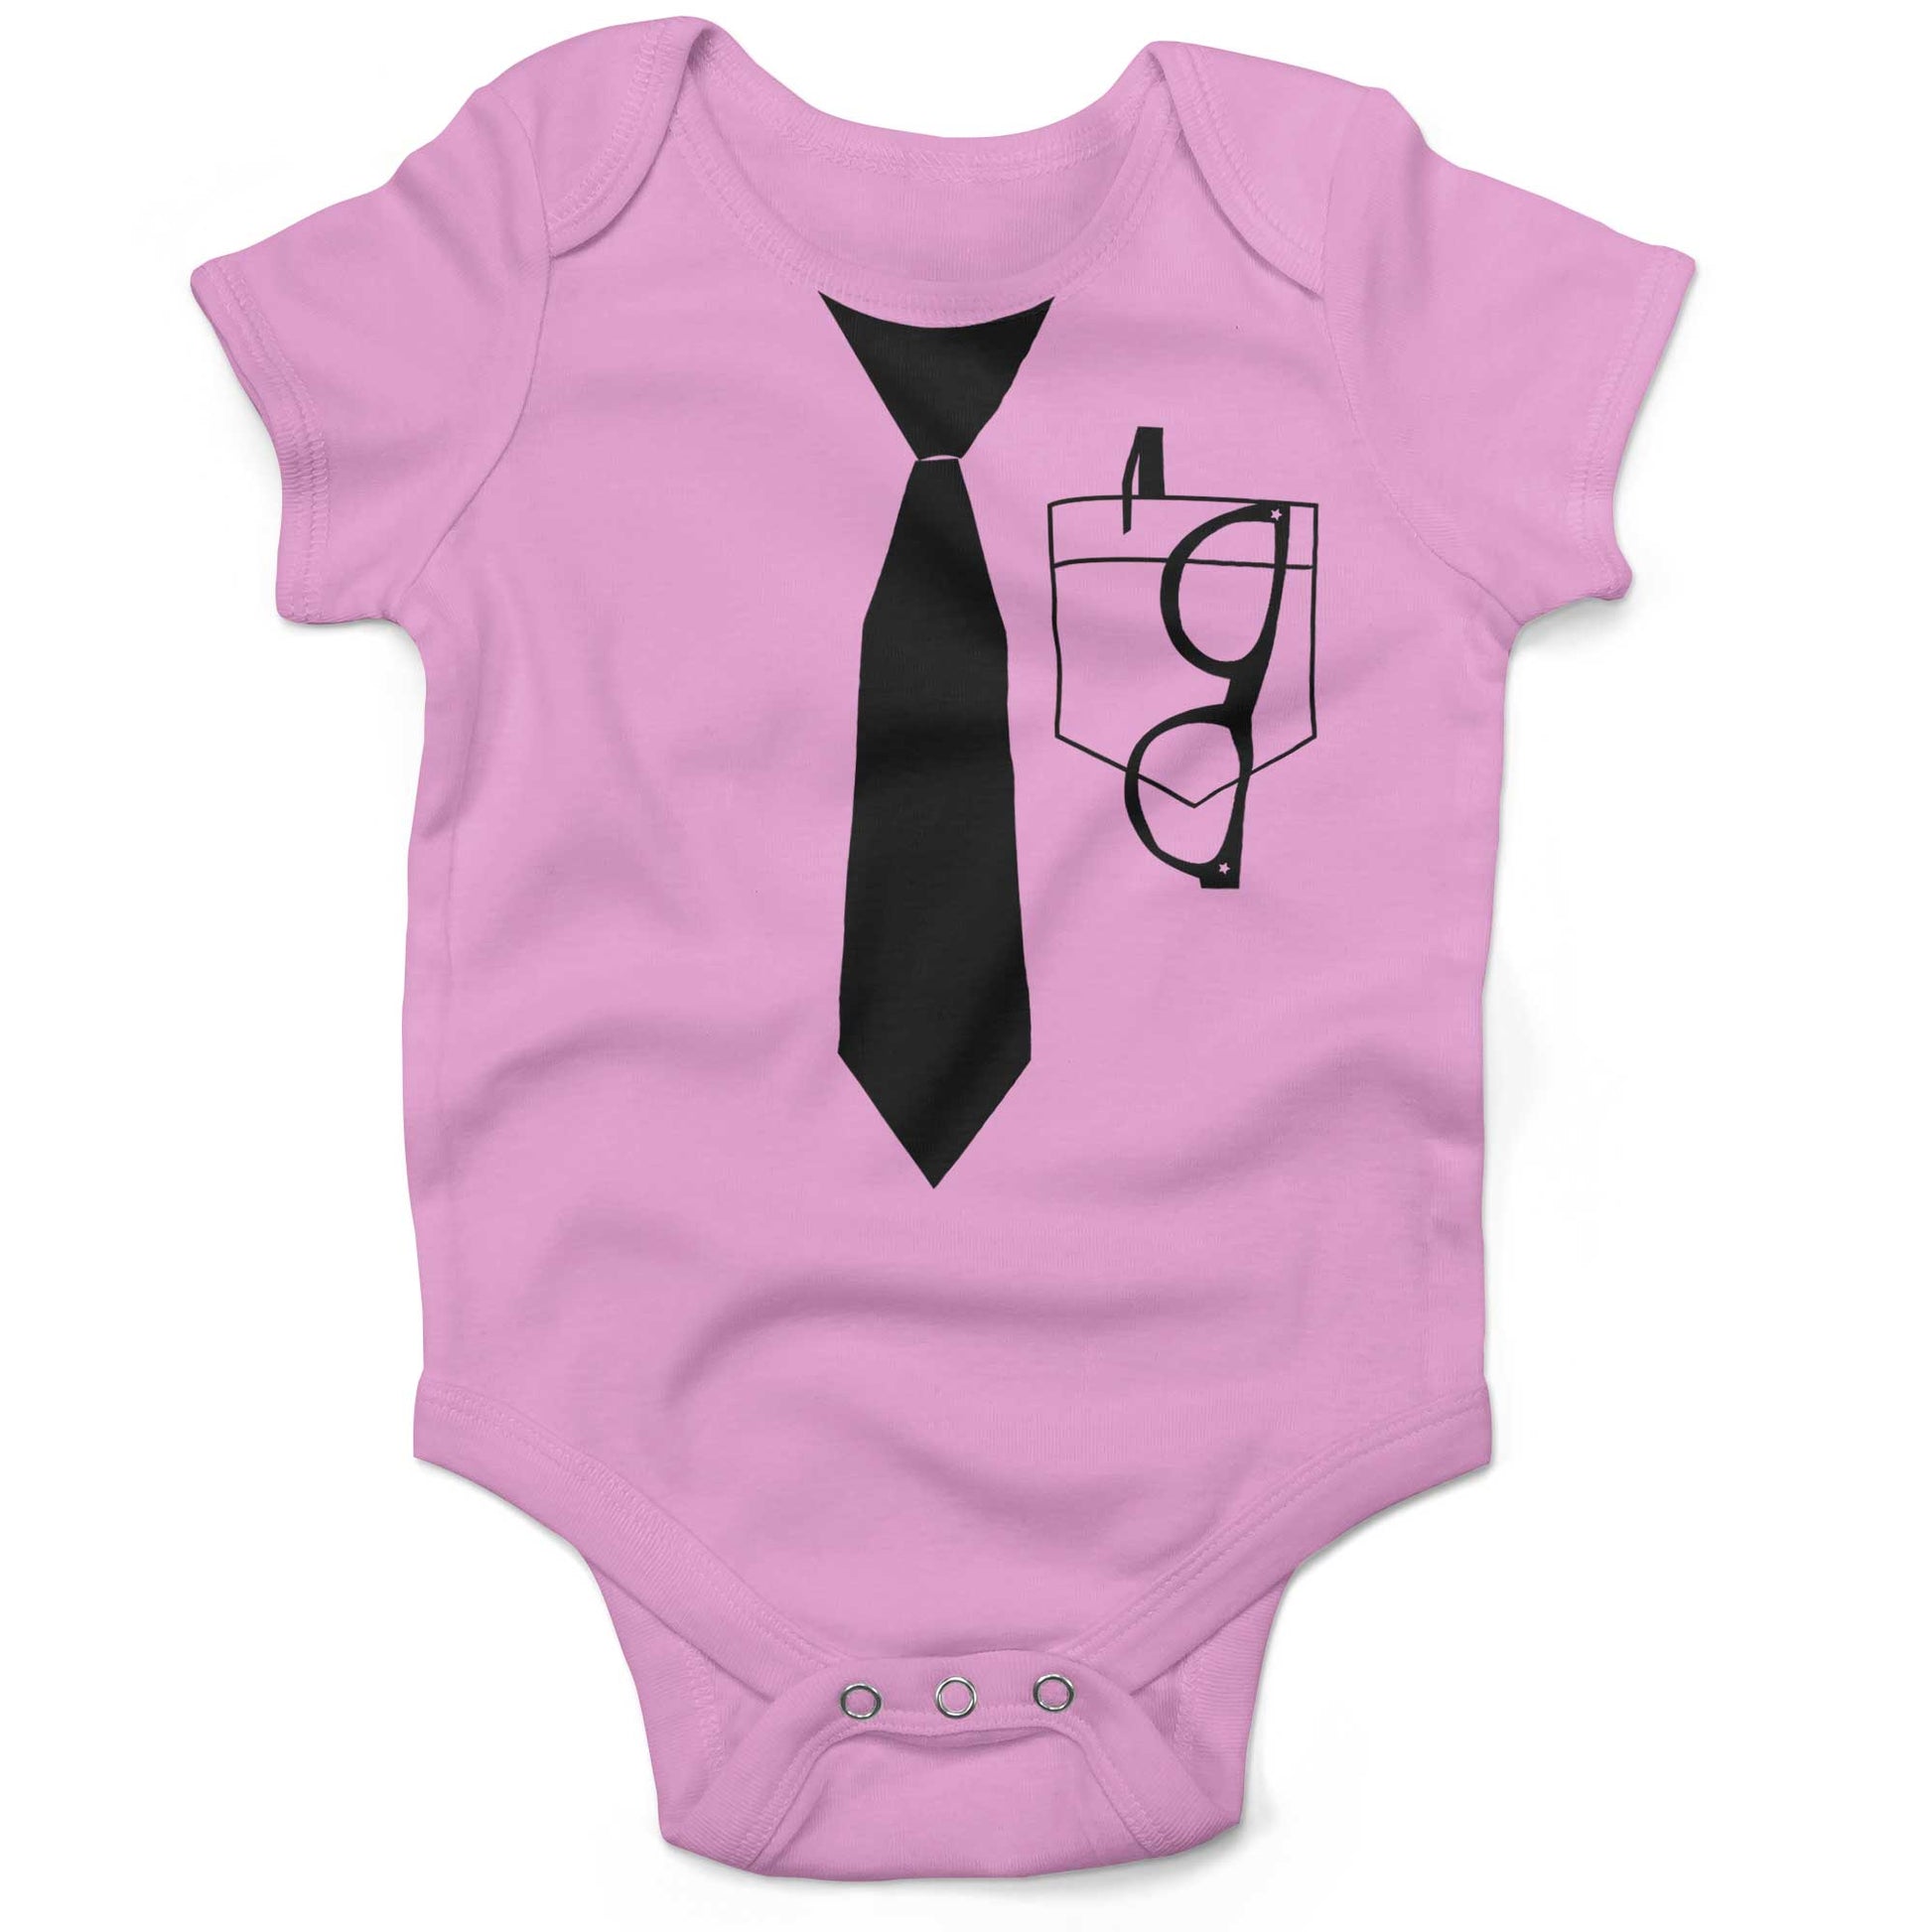 Nerdorama Infant Bodysuit or Raglan Tee-Organic Pink-3-6 months